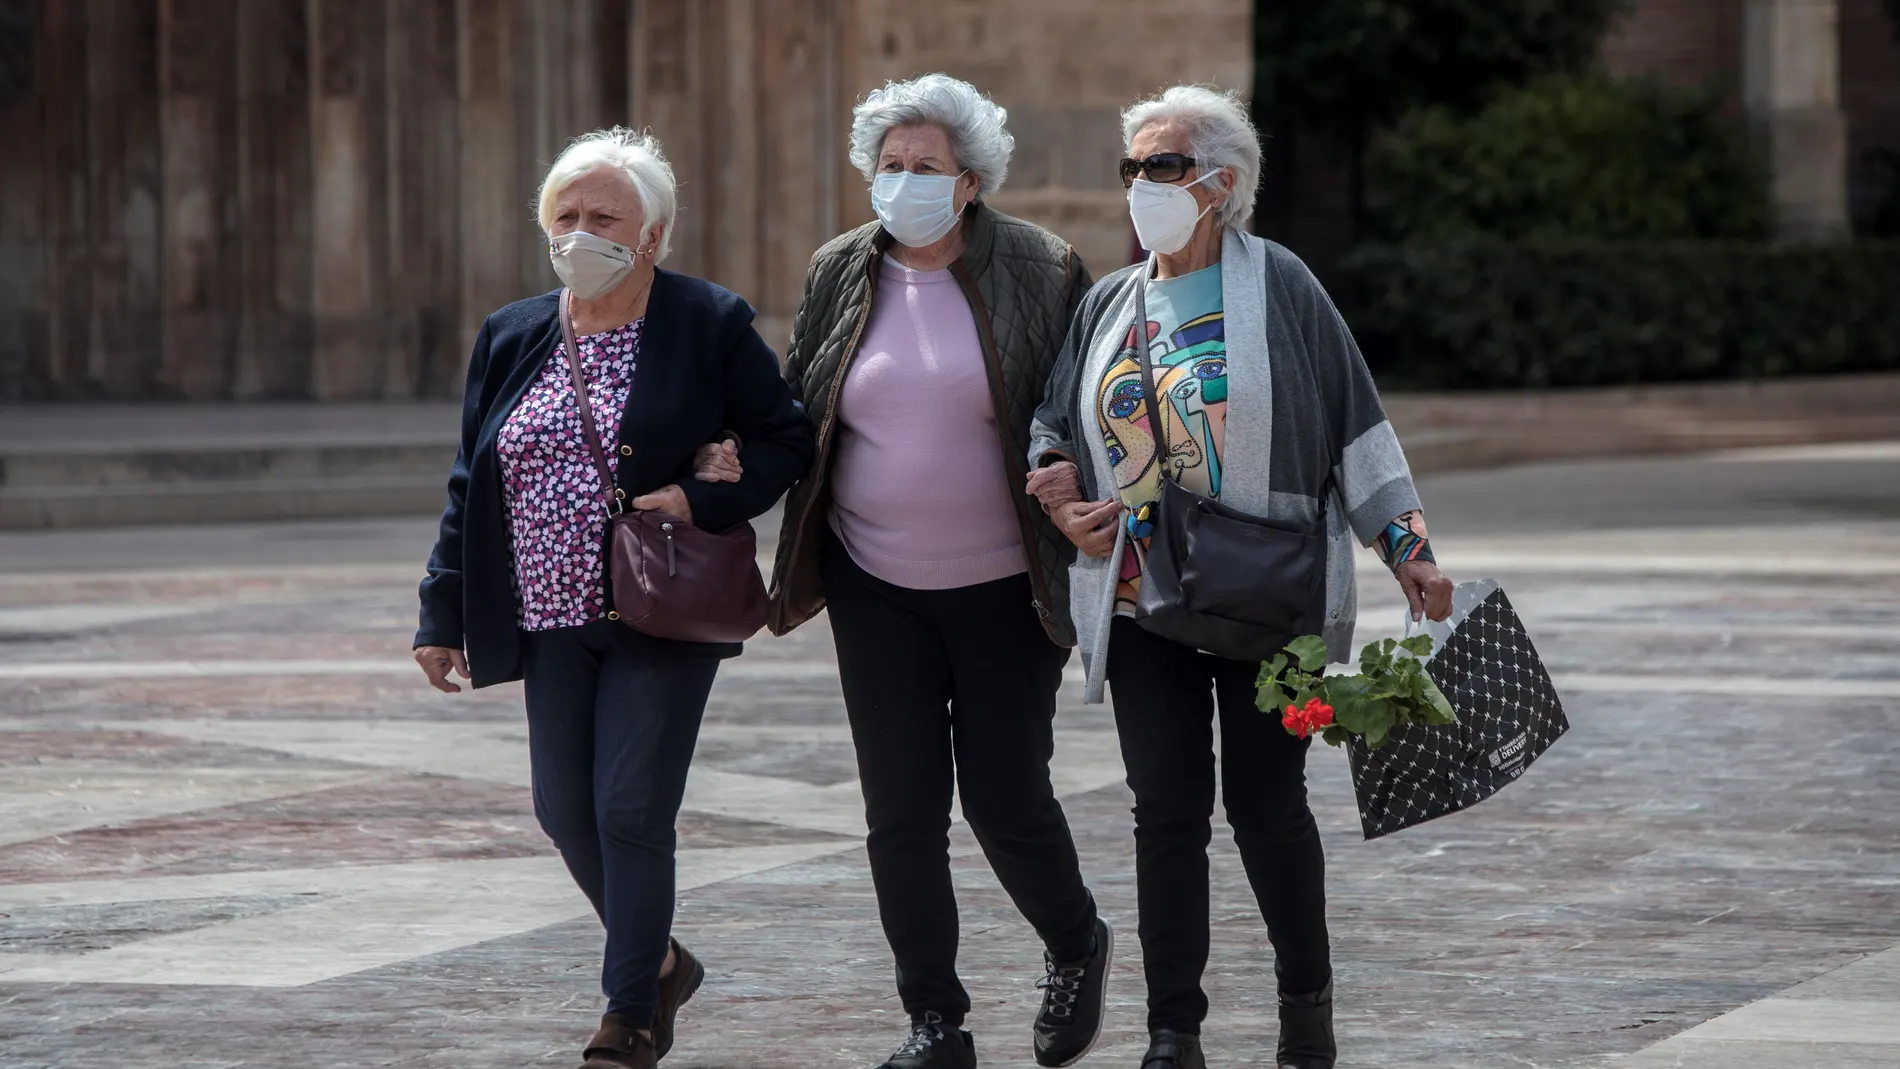 Tres señoras caminan cogidas del brazo en una céntrica plaza de Valencia